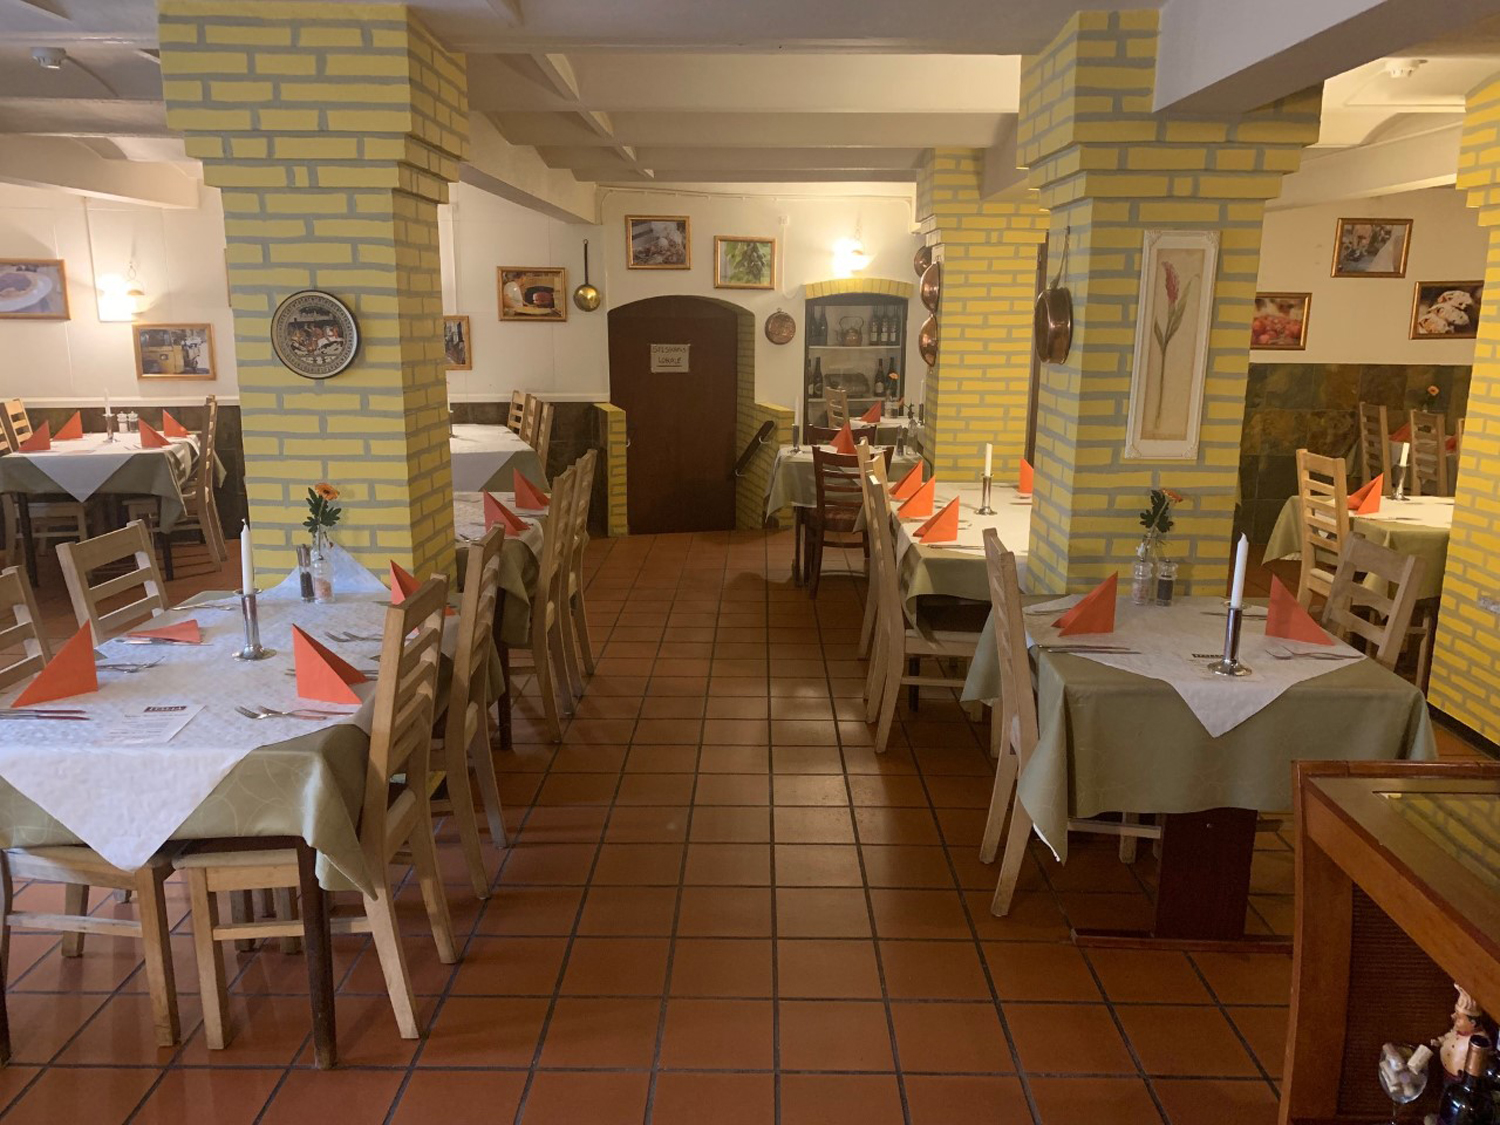 Restaurant Italia